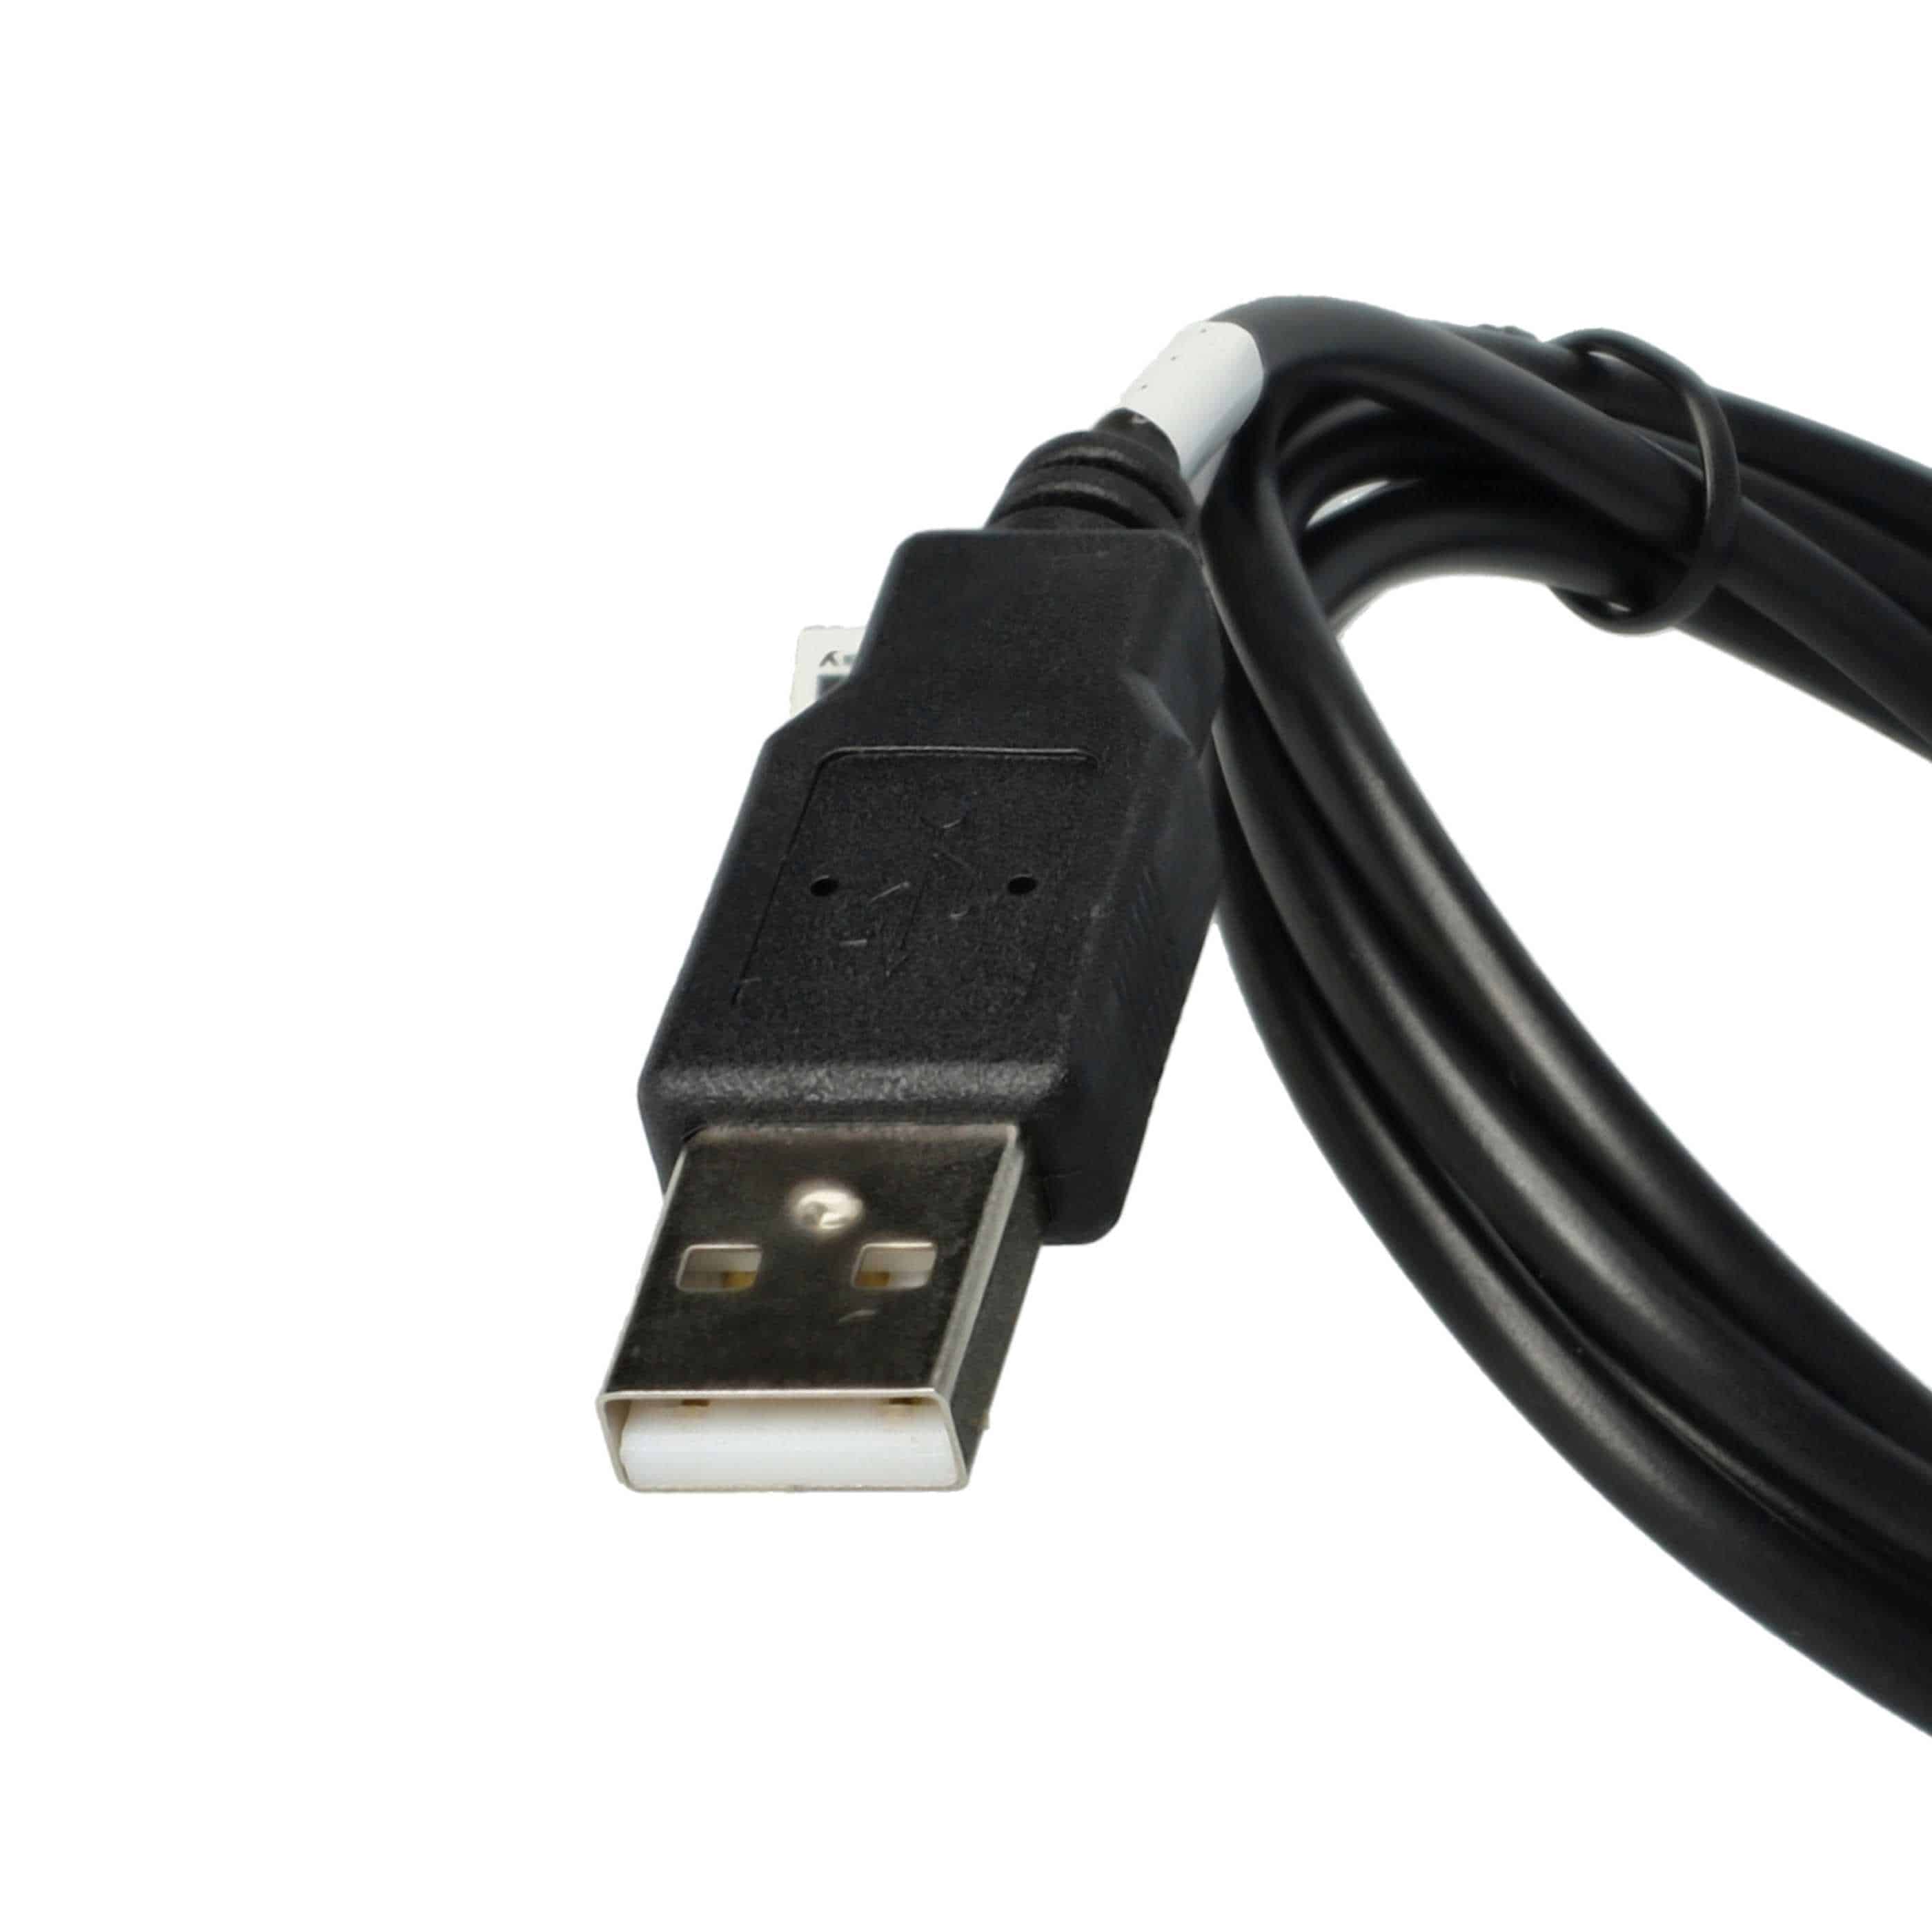 Cable datos USB cable carga (2 en 1) compatible con Mustek navegadores, GPS